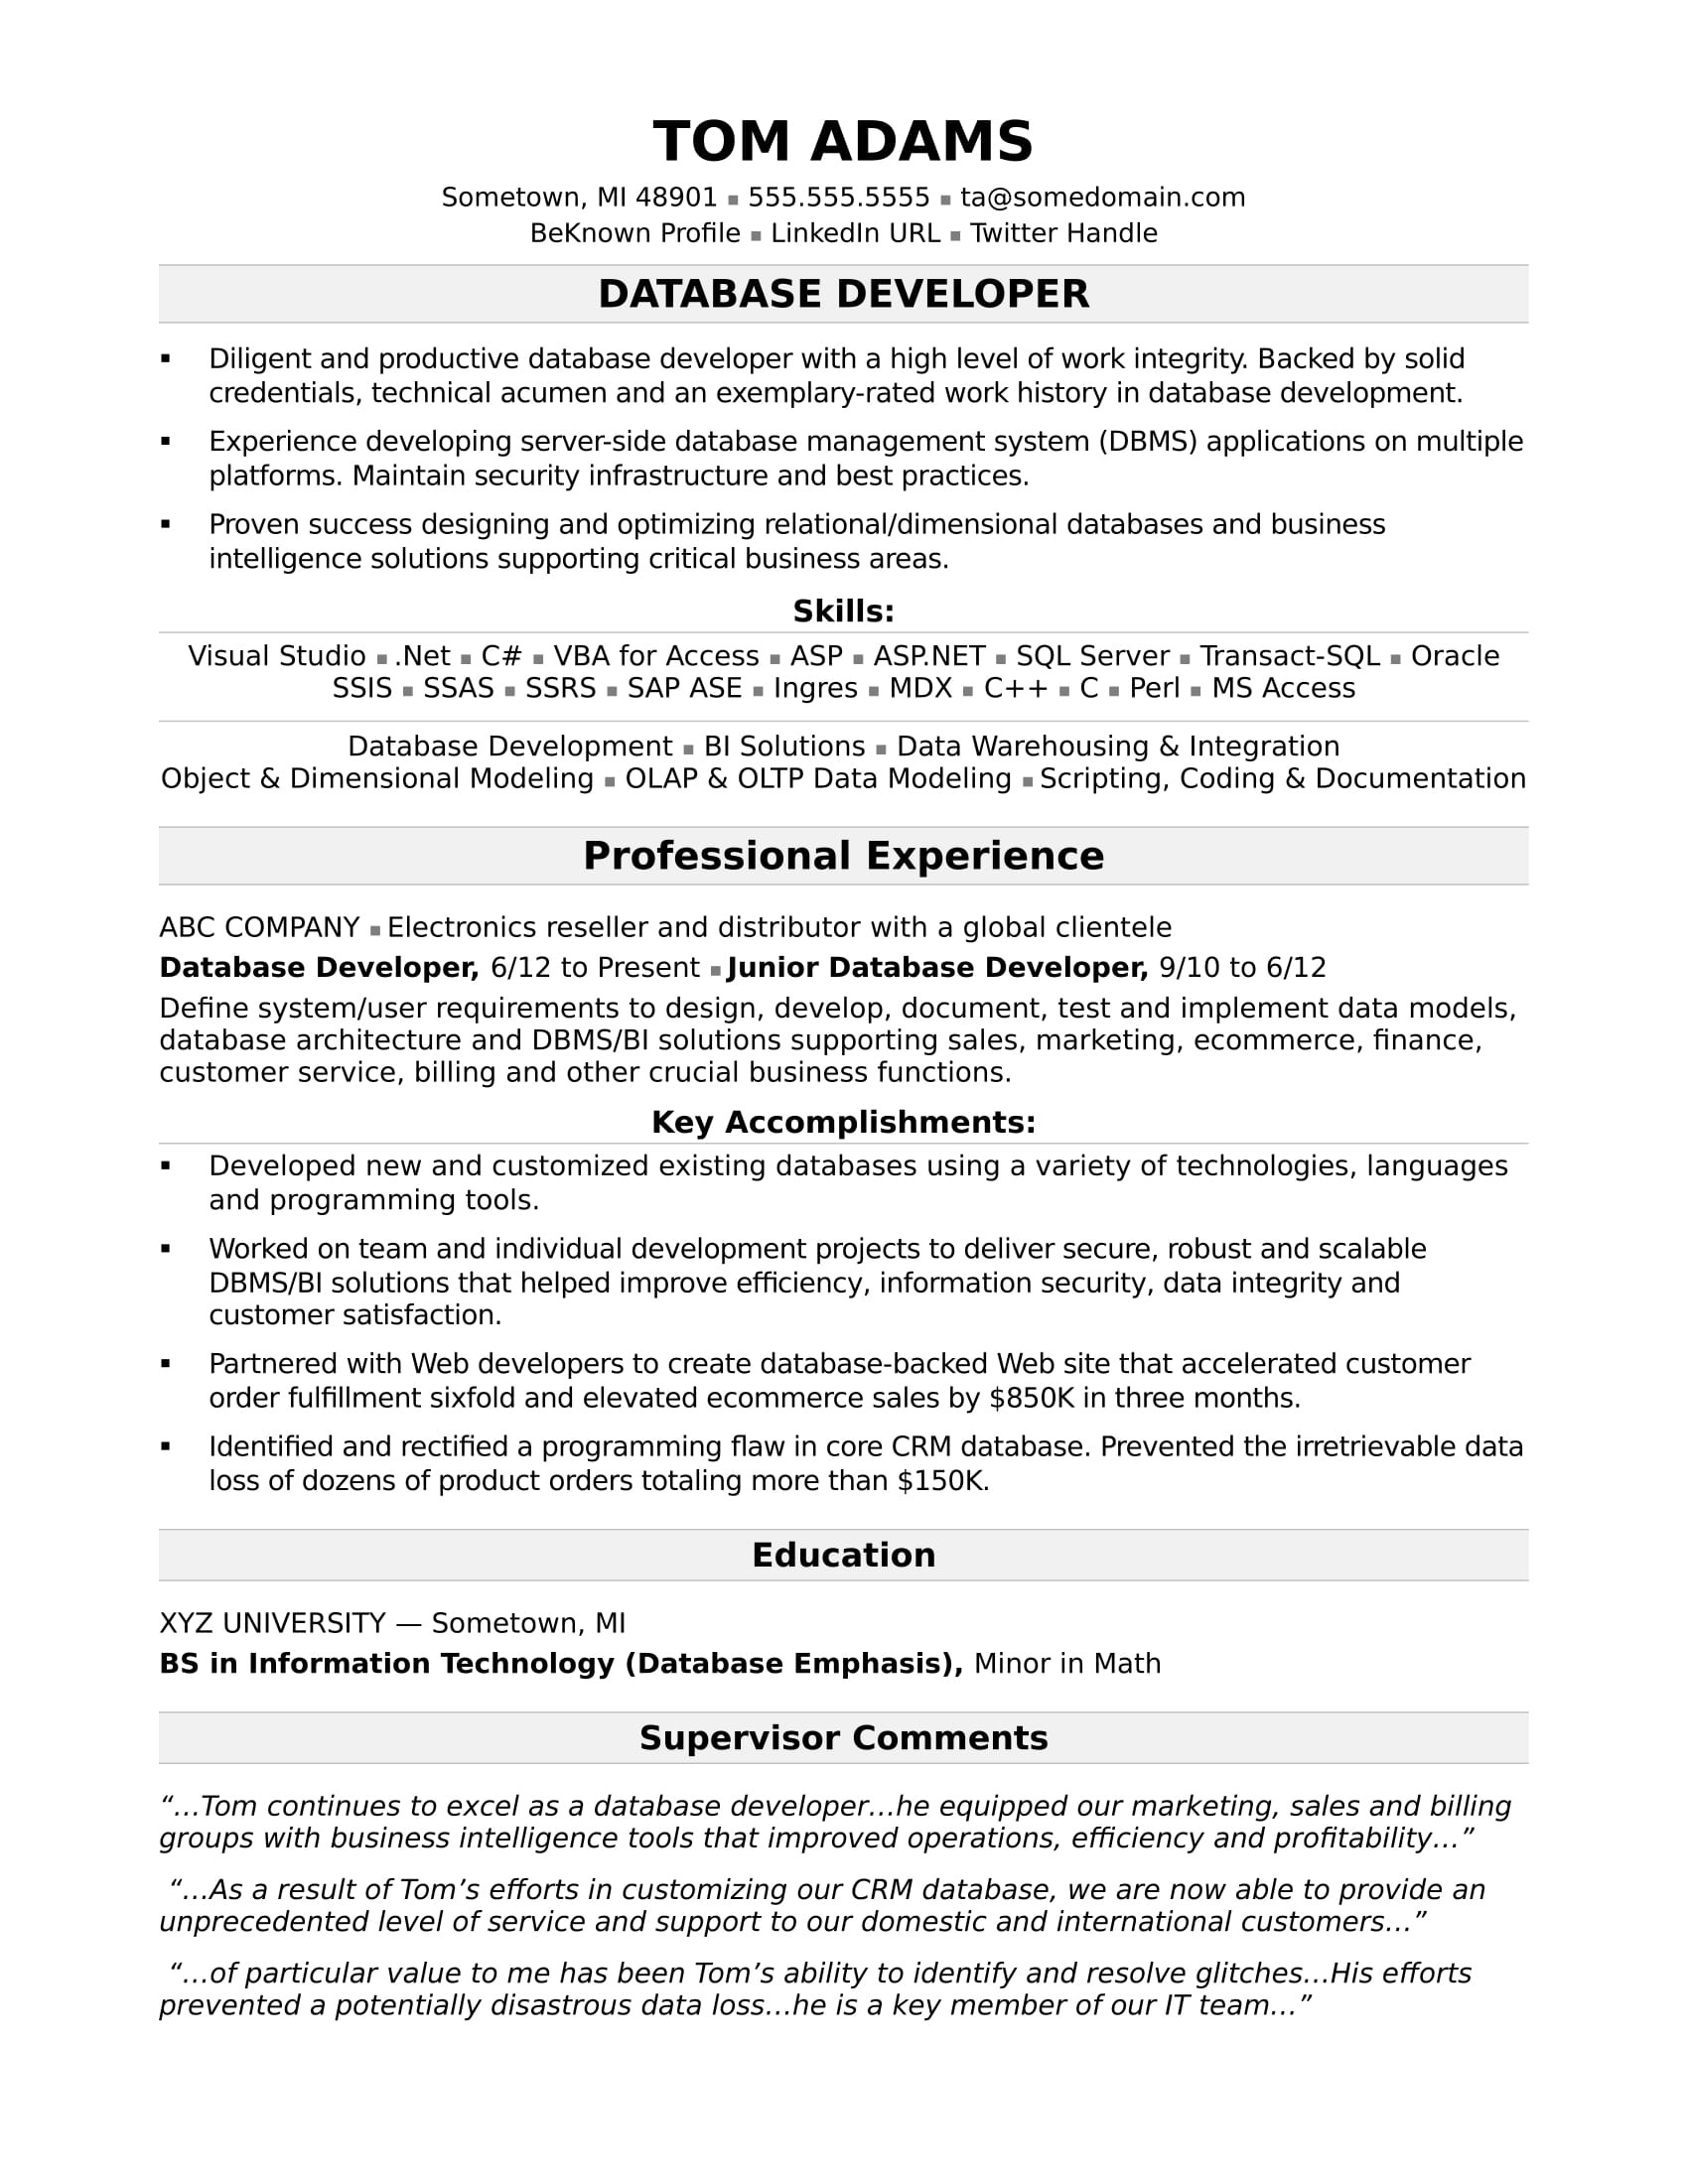 Database Developer Resume Sample Entry Level Sample Resume for A Midlevel It Developer Monster.com